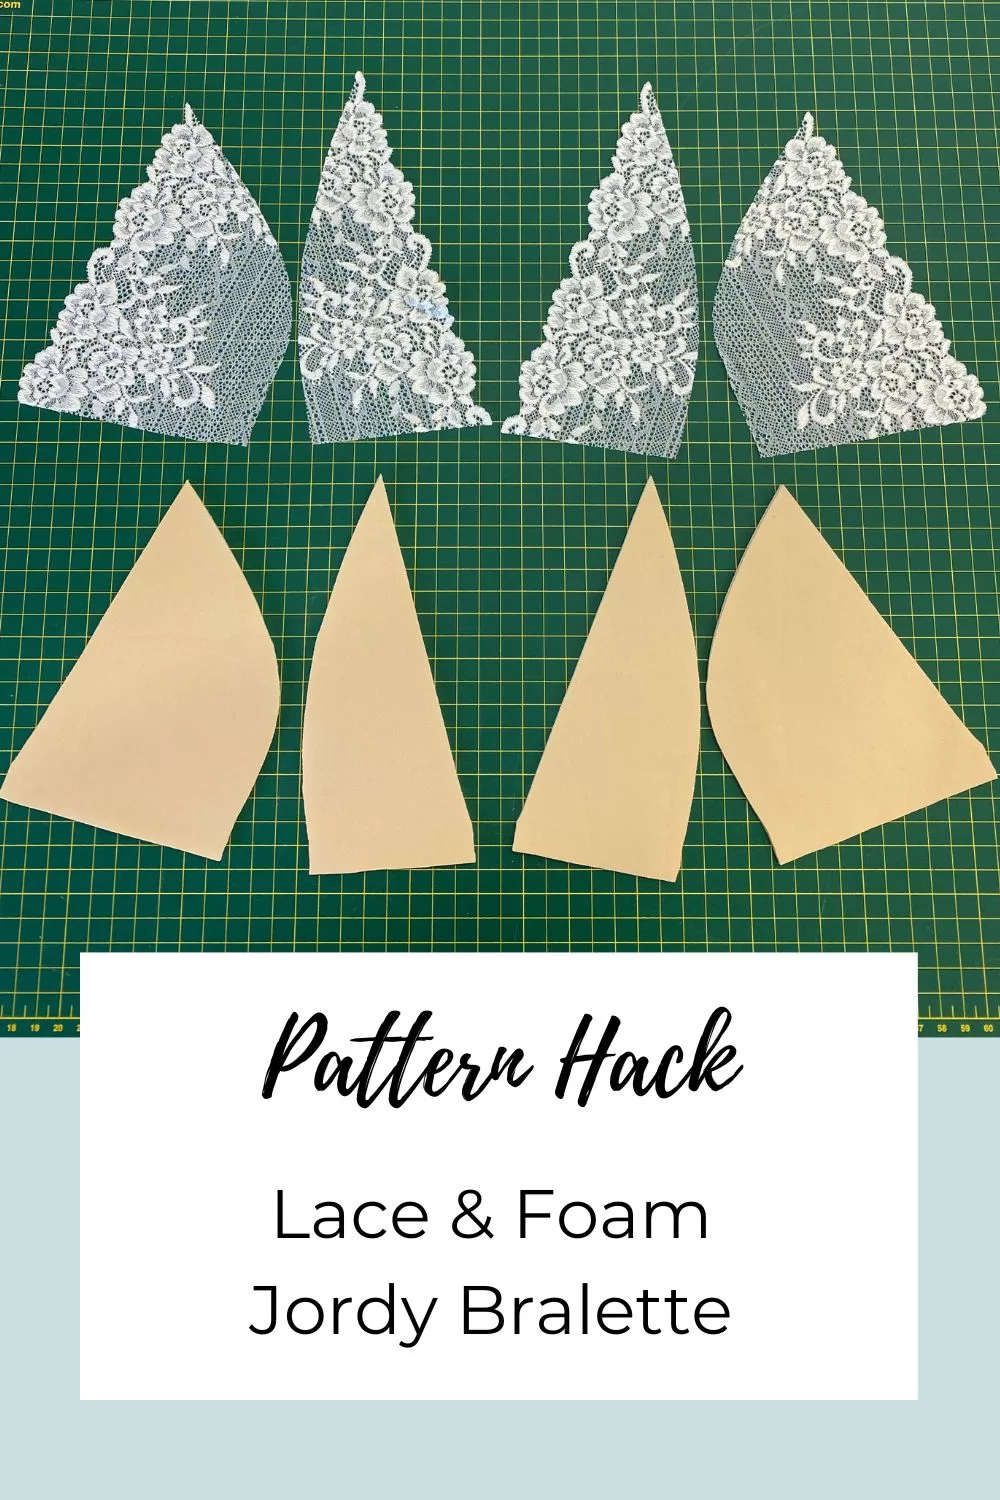 jordy lace foam pattern hack